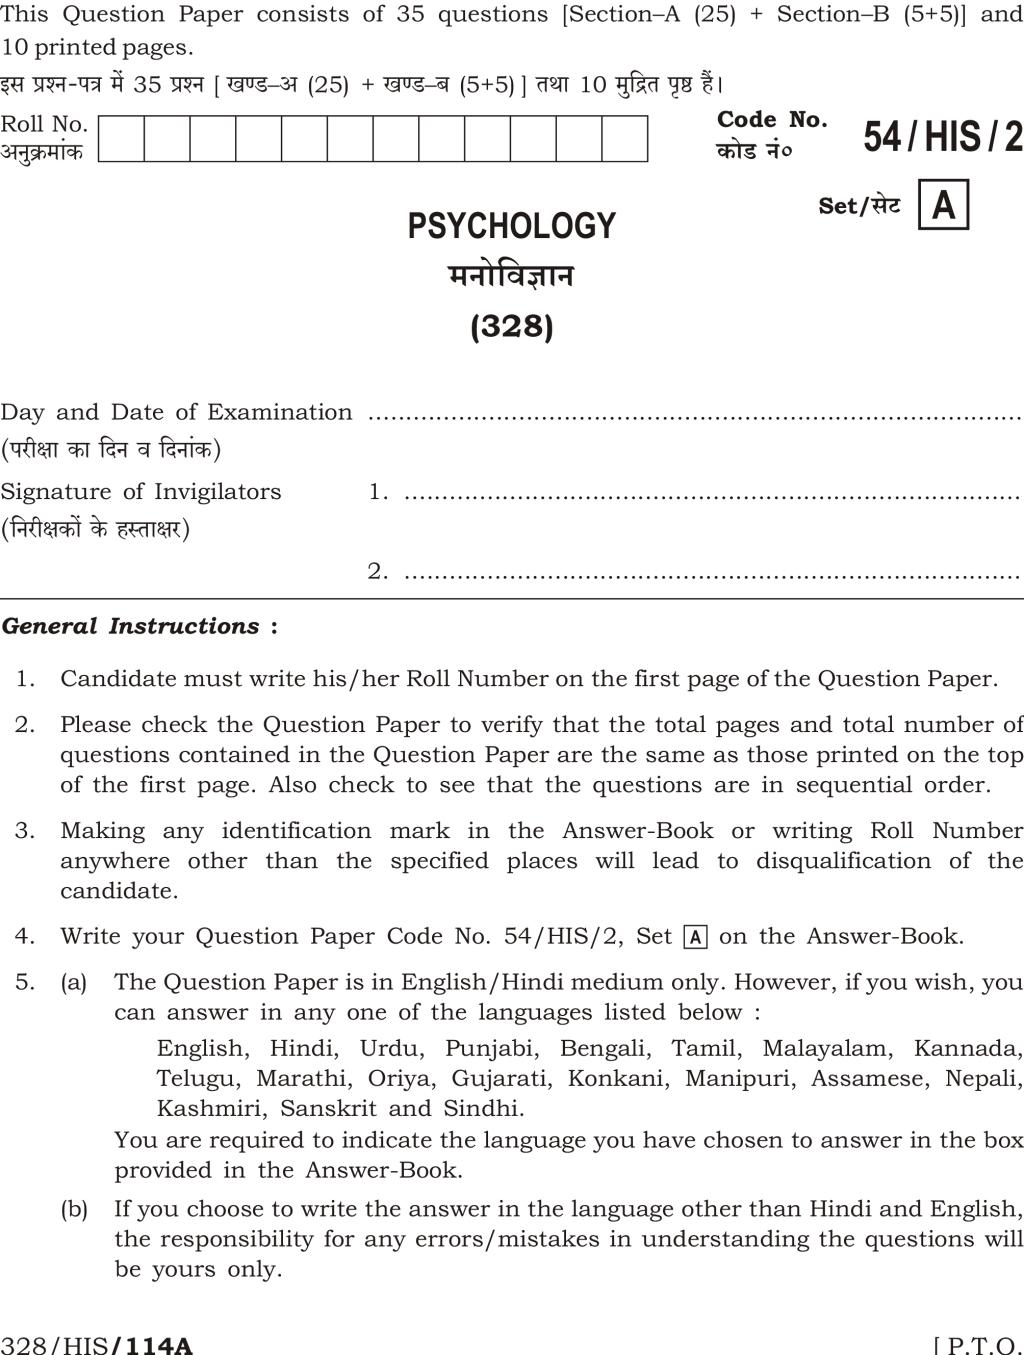 NIOS Class 12 Question Paper Apr 2017 - Psychology - Page 1